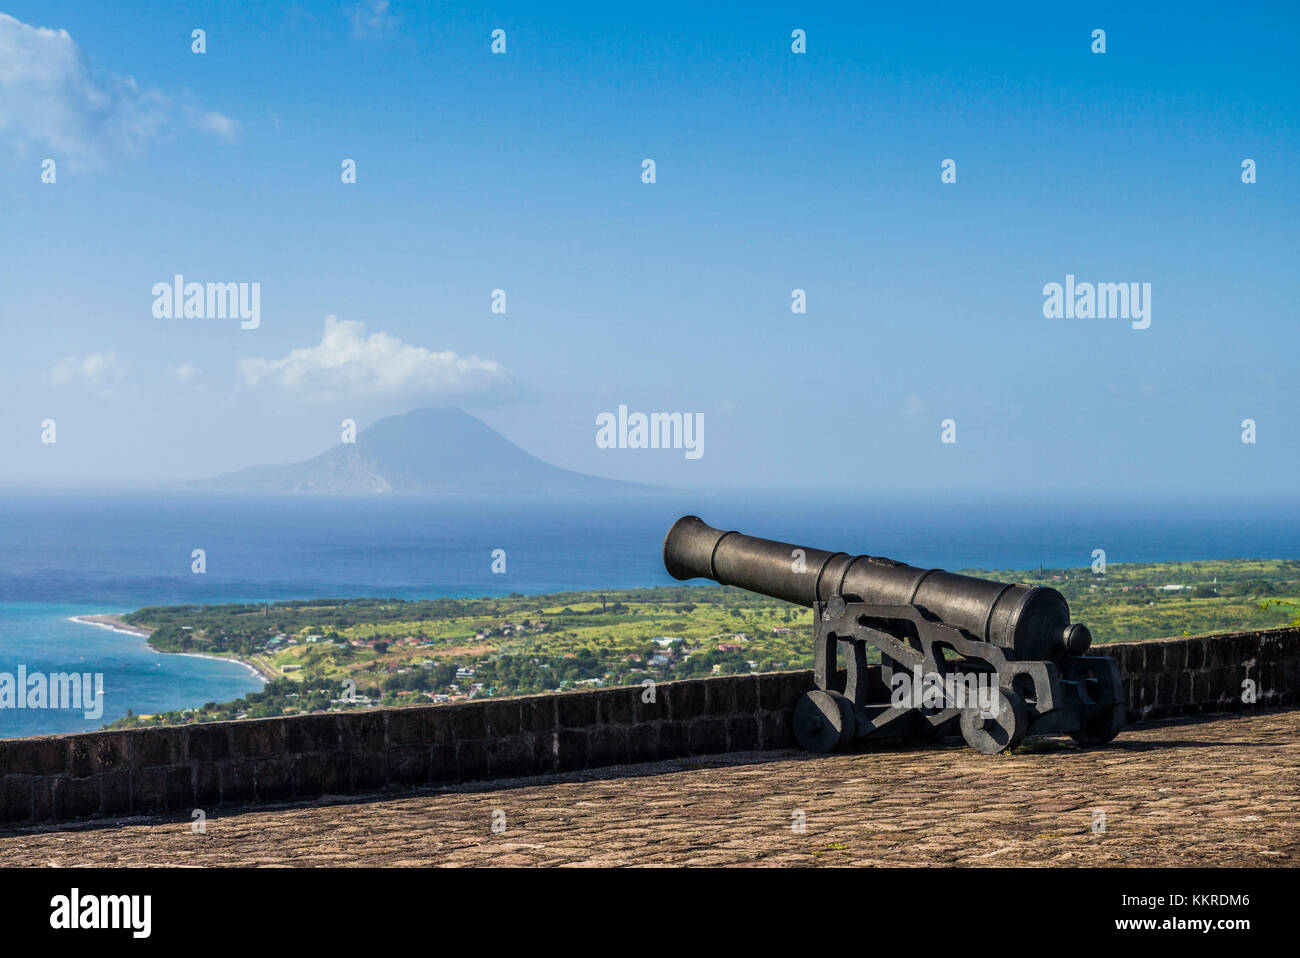 Saint Kitts et Nevis, St Kitts,., de Brimstone Hill, augmentation de la forteresse de Brimstone Hill sur la côte vers l'île de Santo Domingo Banque D'Images